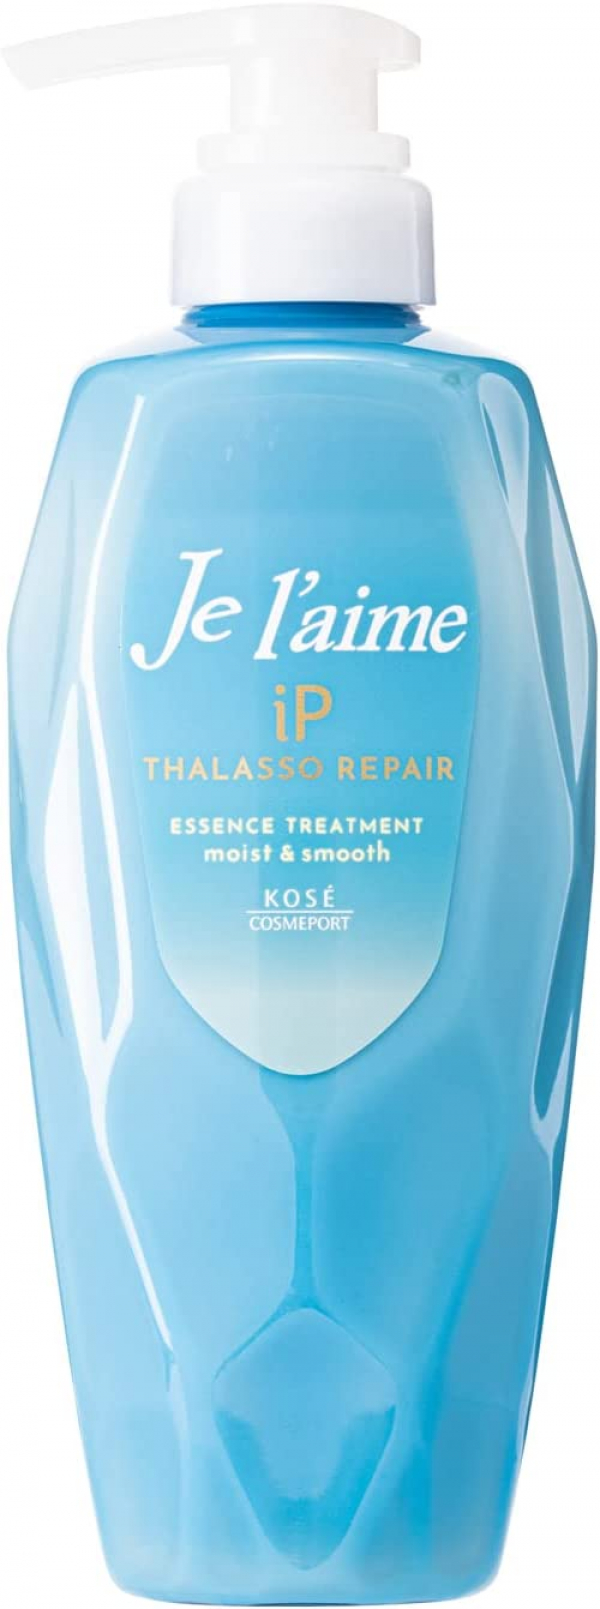 Бальзам с аминокислотами и iP-коллагеном для увлажнения и восстановления волос KOSE Je l’aime Thalasso Repair Essence Treatment